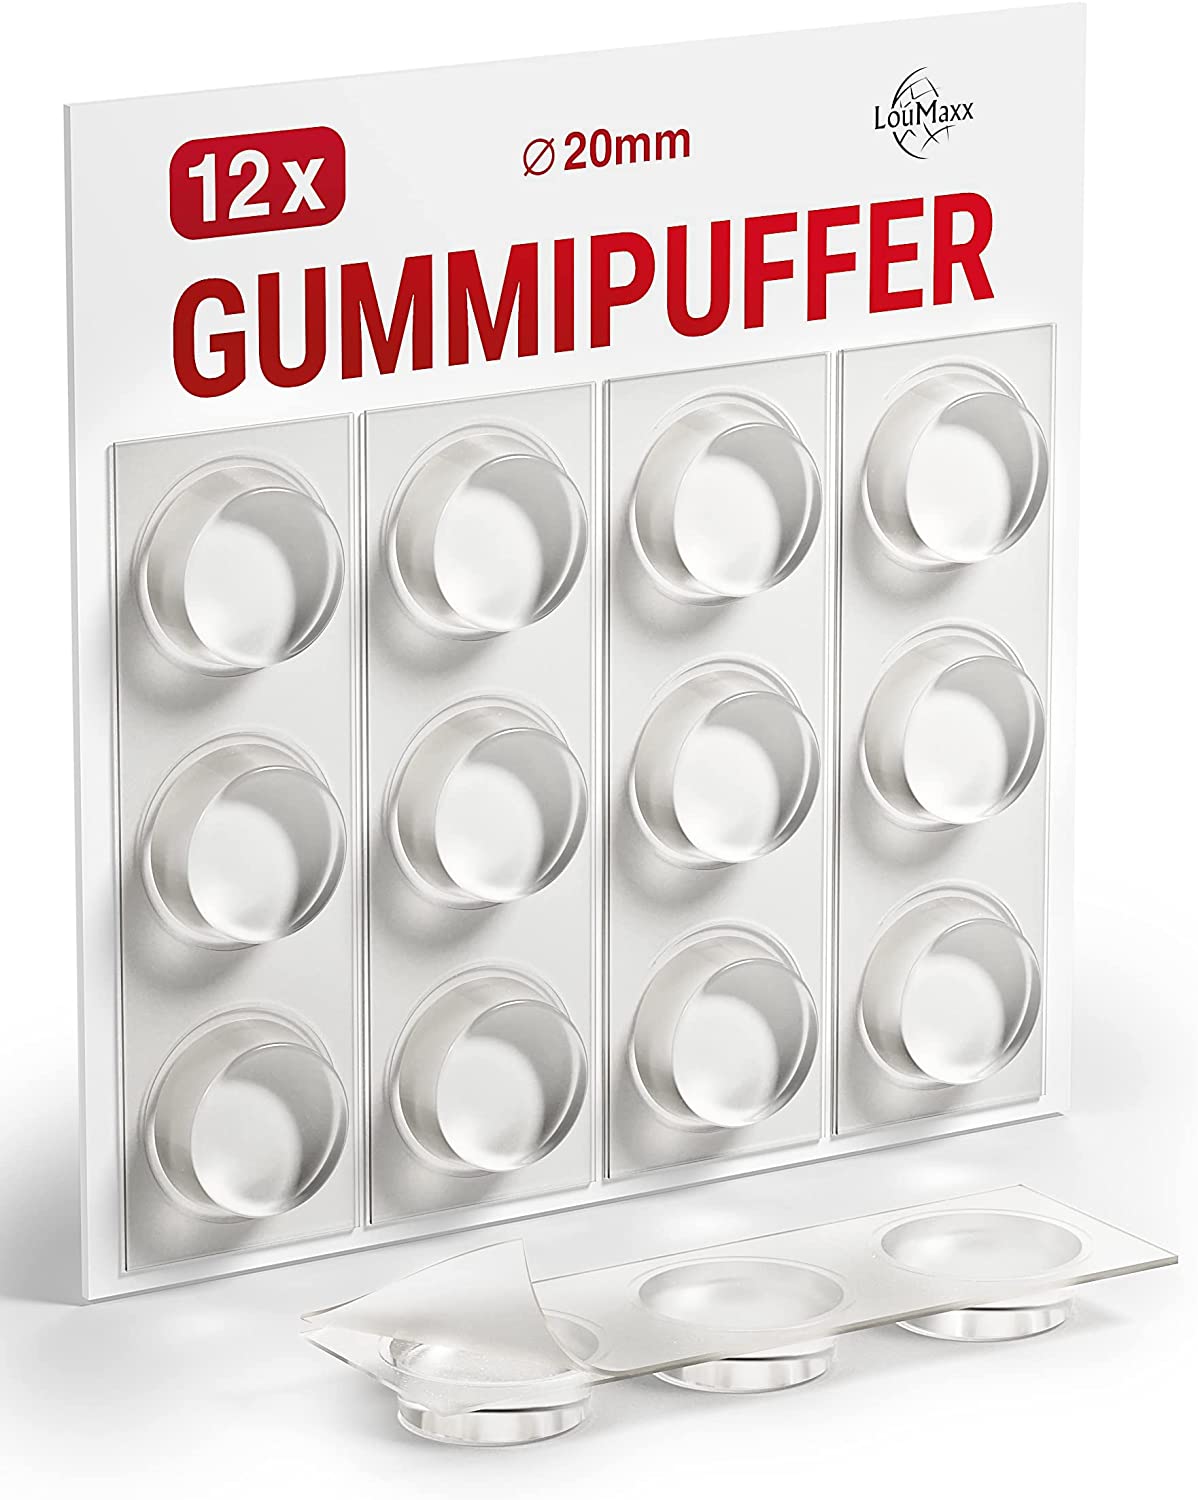 LouMaxx Gummipuffer - 12x Puffer transparent 20mm Ø - Gumminoppen für